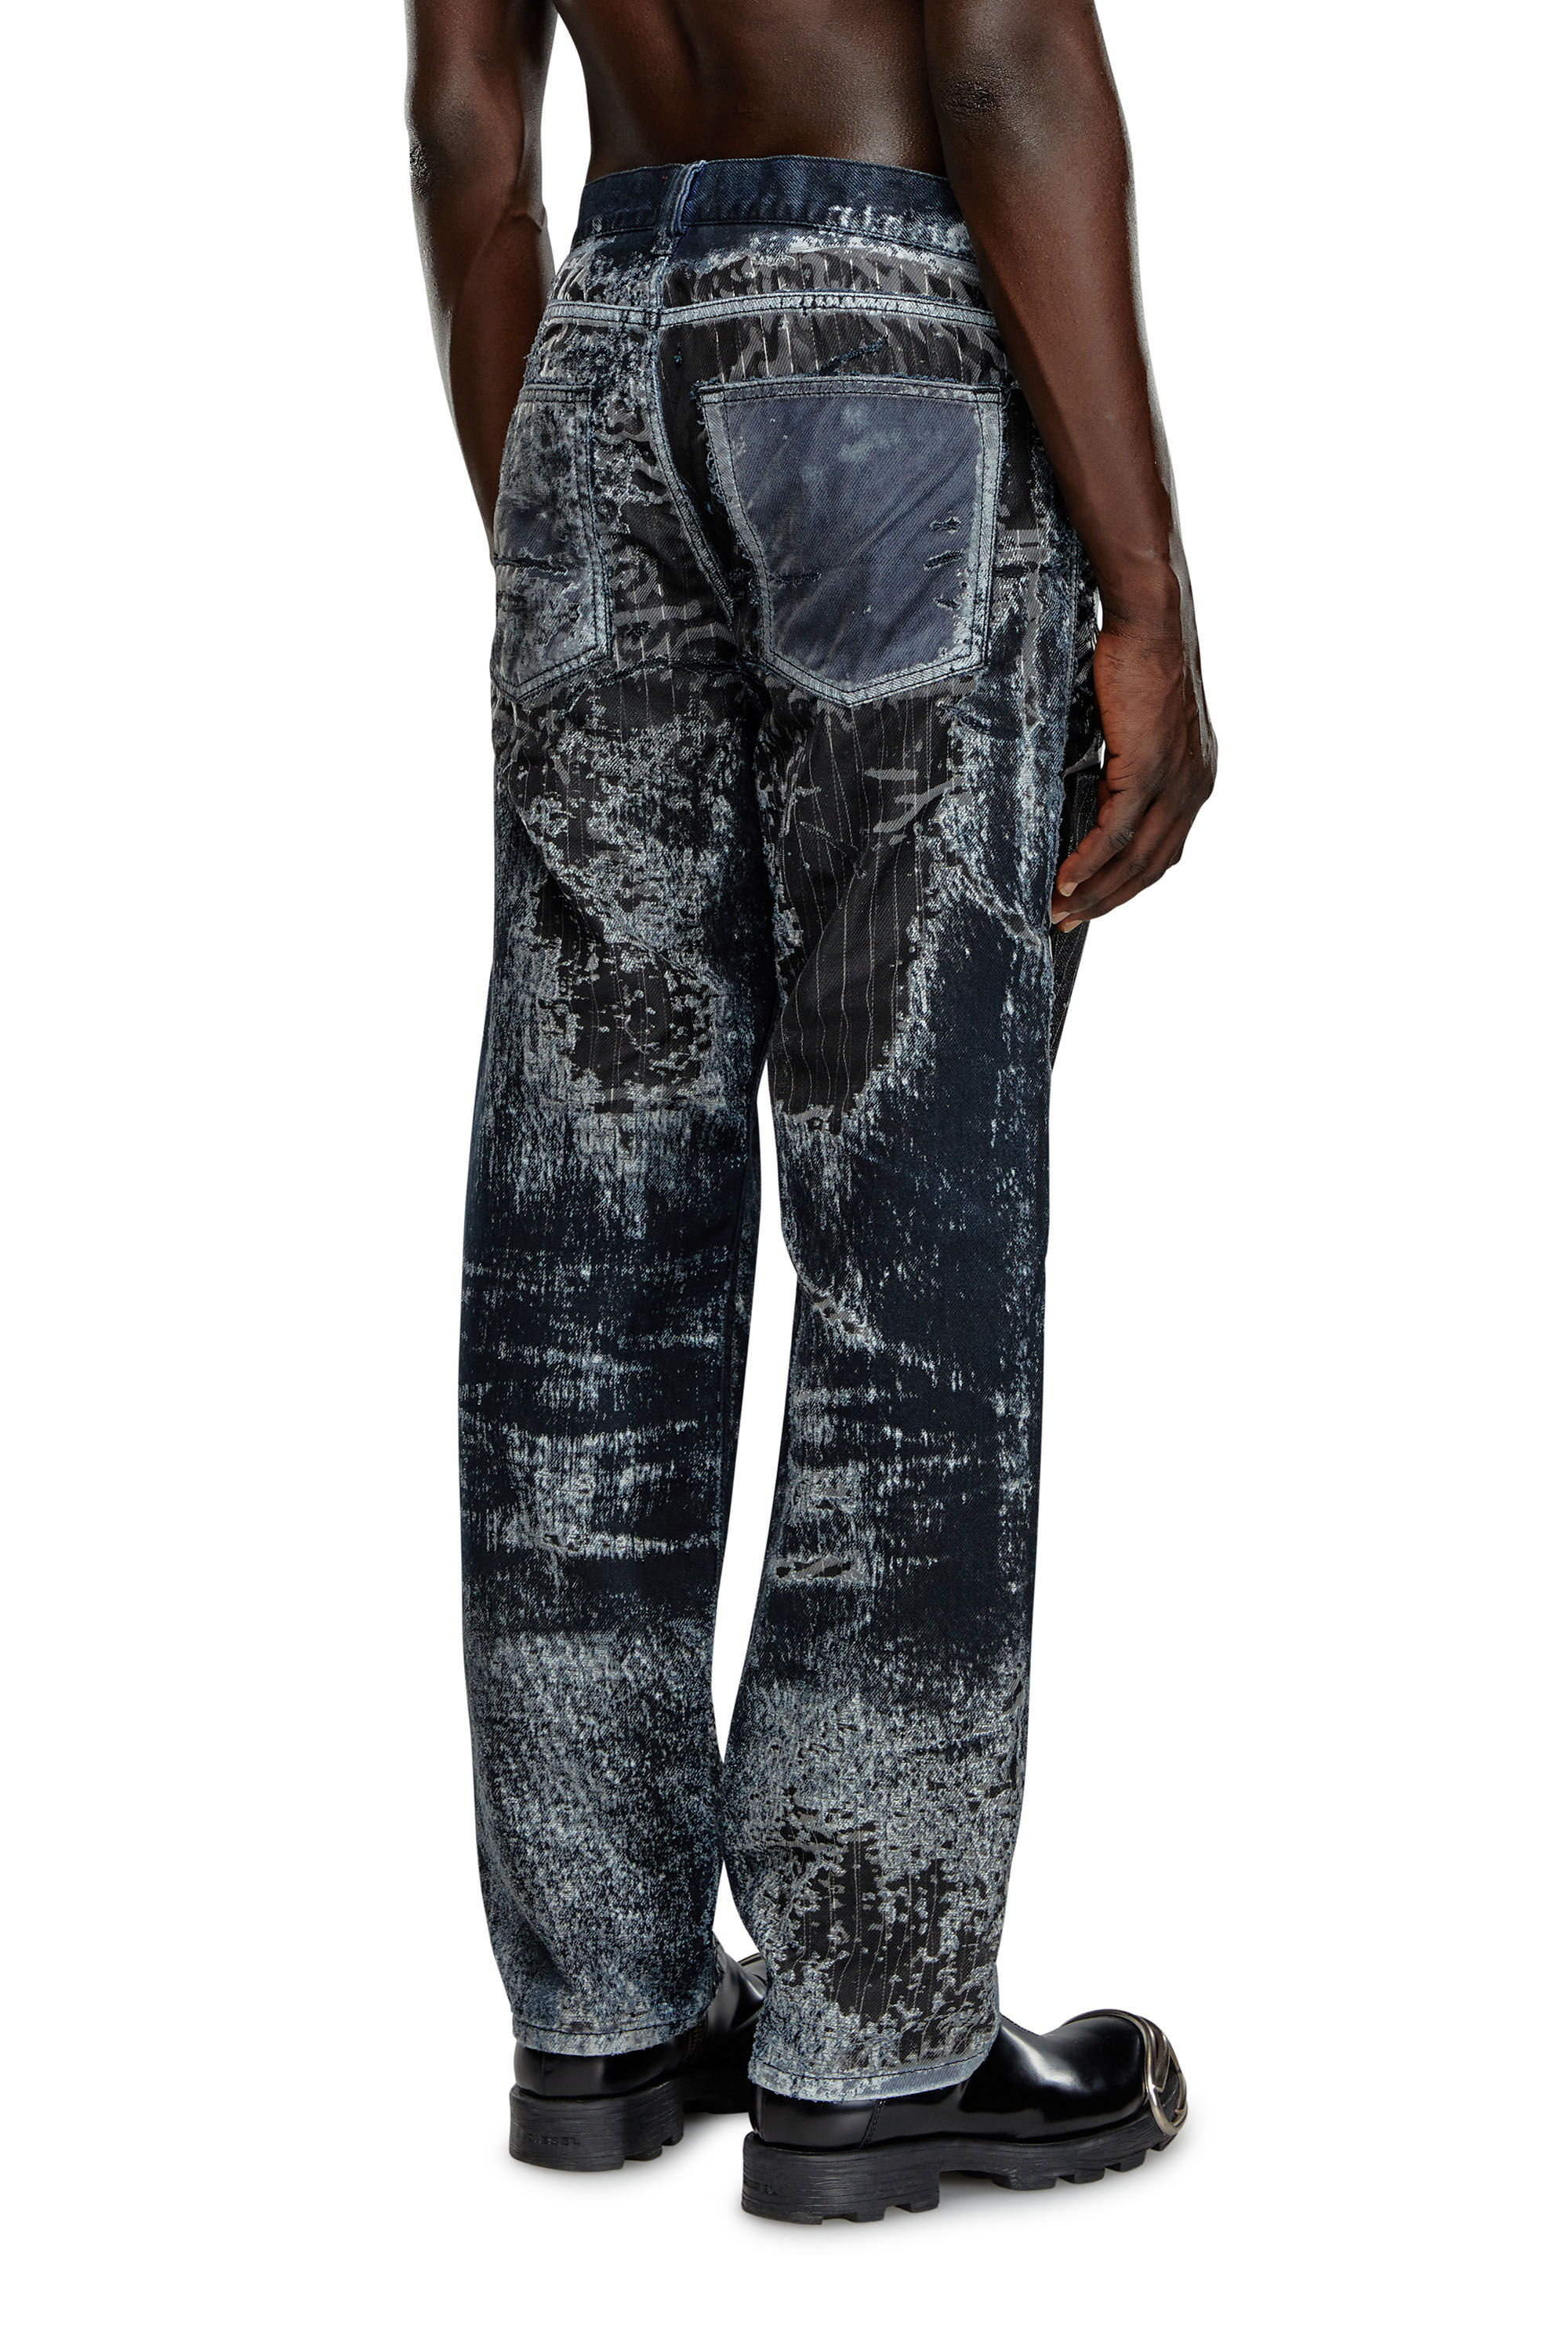 Men's Straight Jeans | Black/Dark grey | Diesel 2010 D-Macs